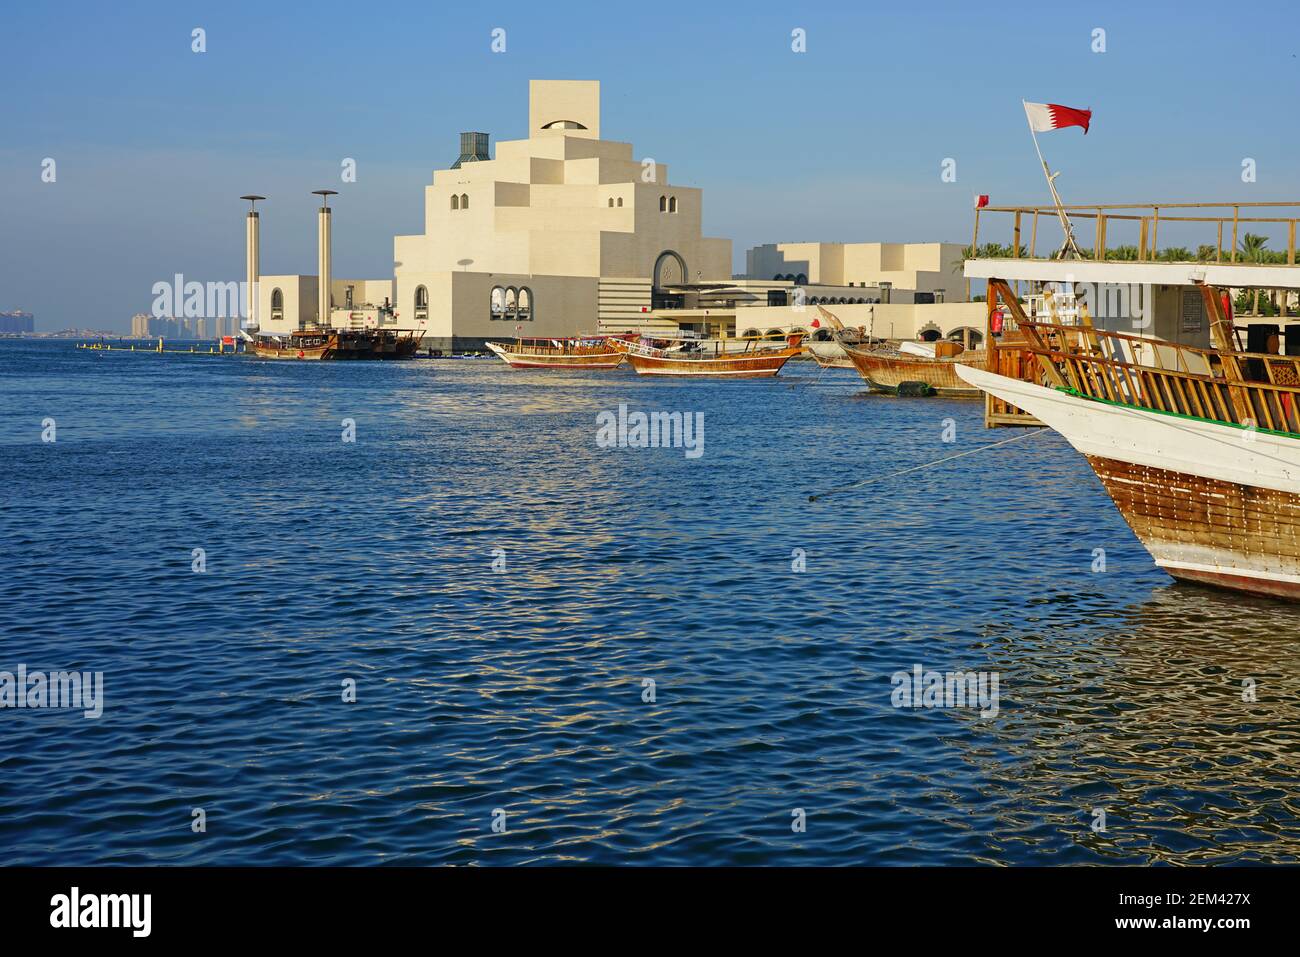 DOHA, Qatar-11 Dez 2019 - Blick auf den traditionellen Dhow Boote aus Holz vor dem berühmten Museum für Islamische Kunst Gebäude, entworfen vom Architekten I.M.Pei, Stockfoto